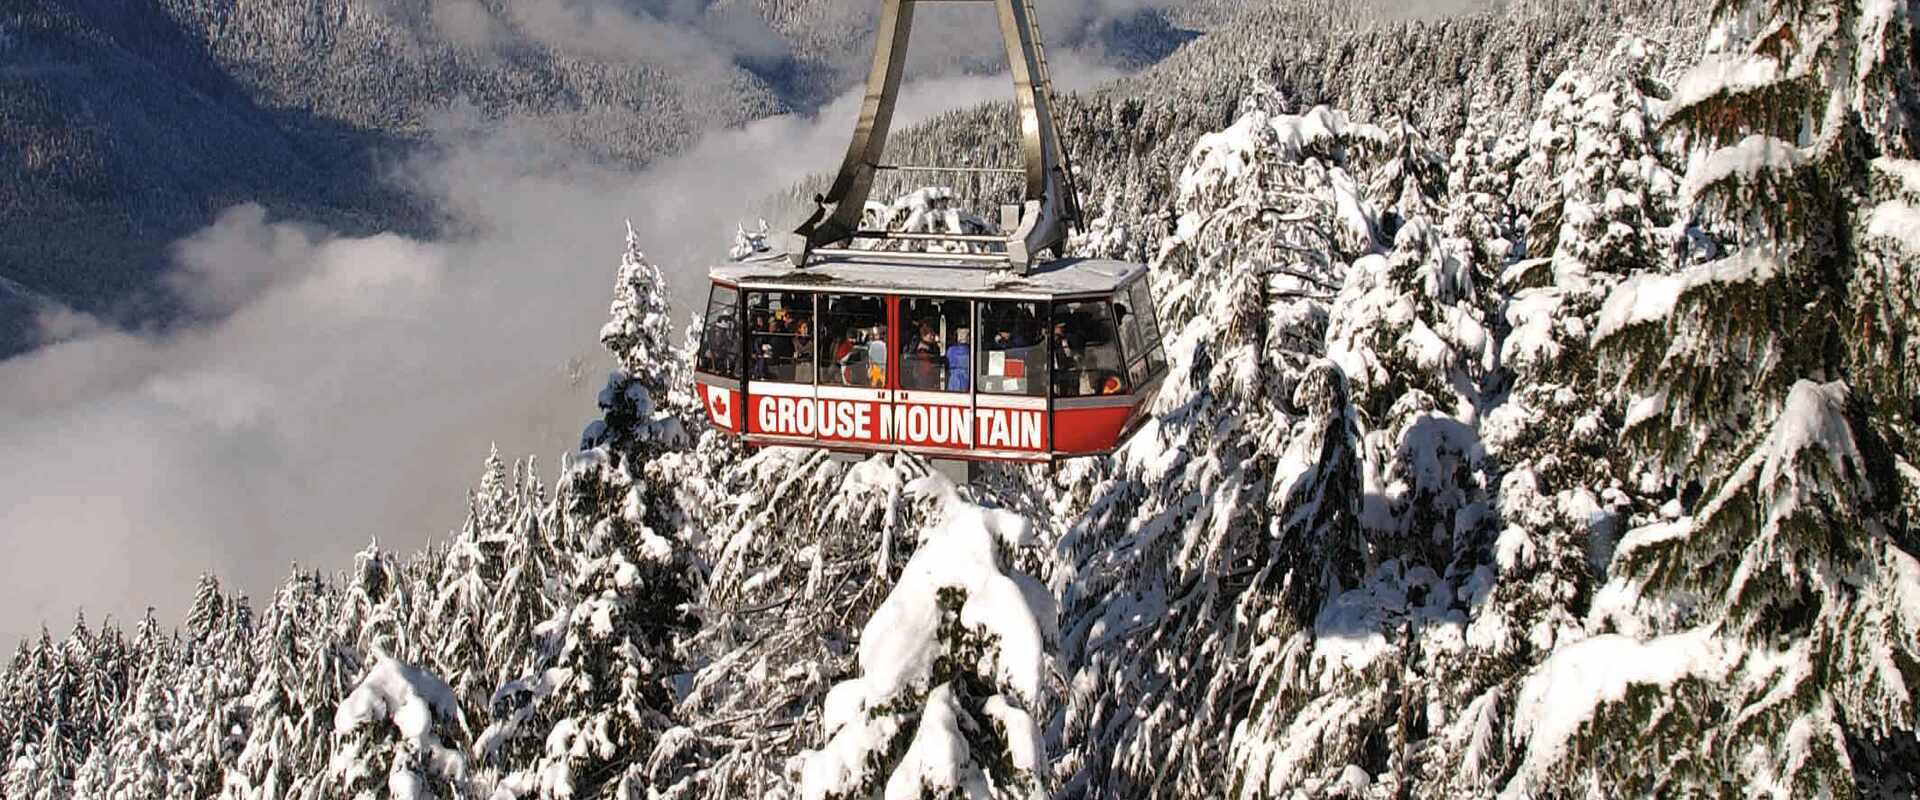 Canada Grouse Mountain Skyride Winter